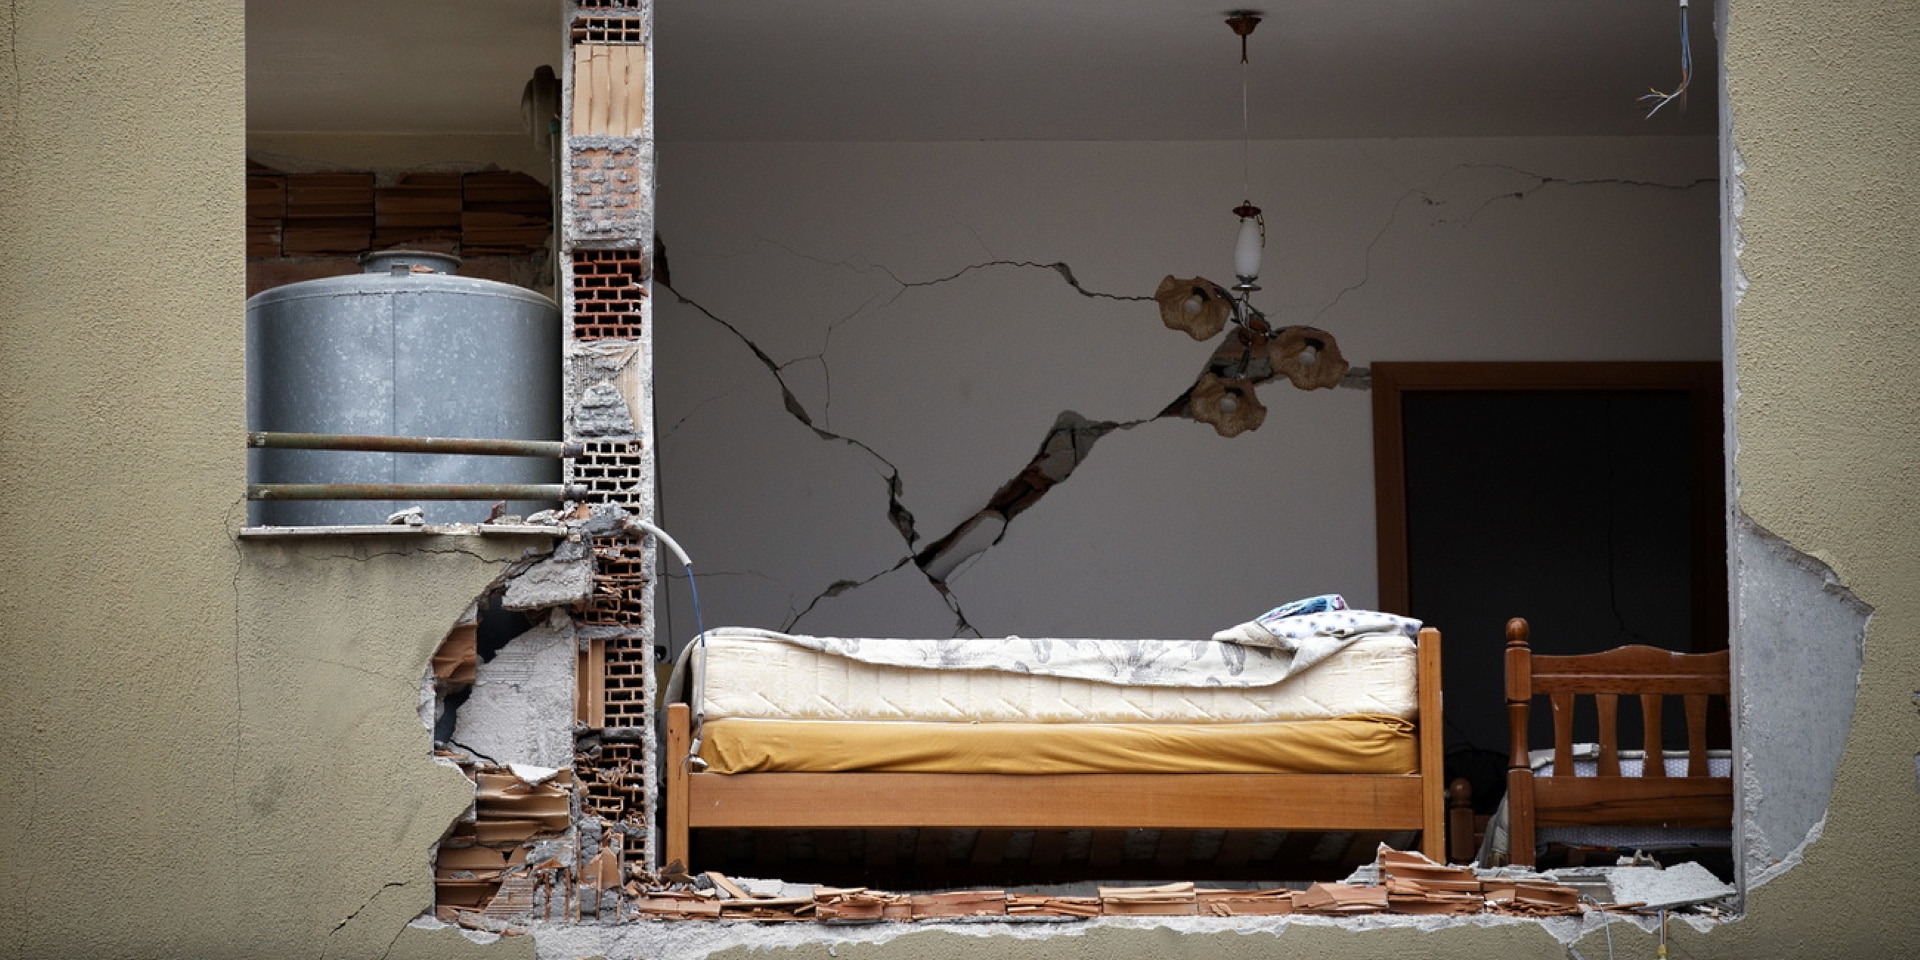 Il terremoto ha aperto un buco nella facciata di un edificio residenziale attraverso il quale si vede un letto.